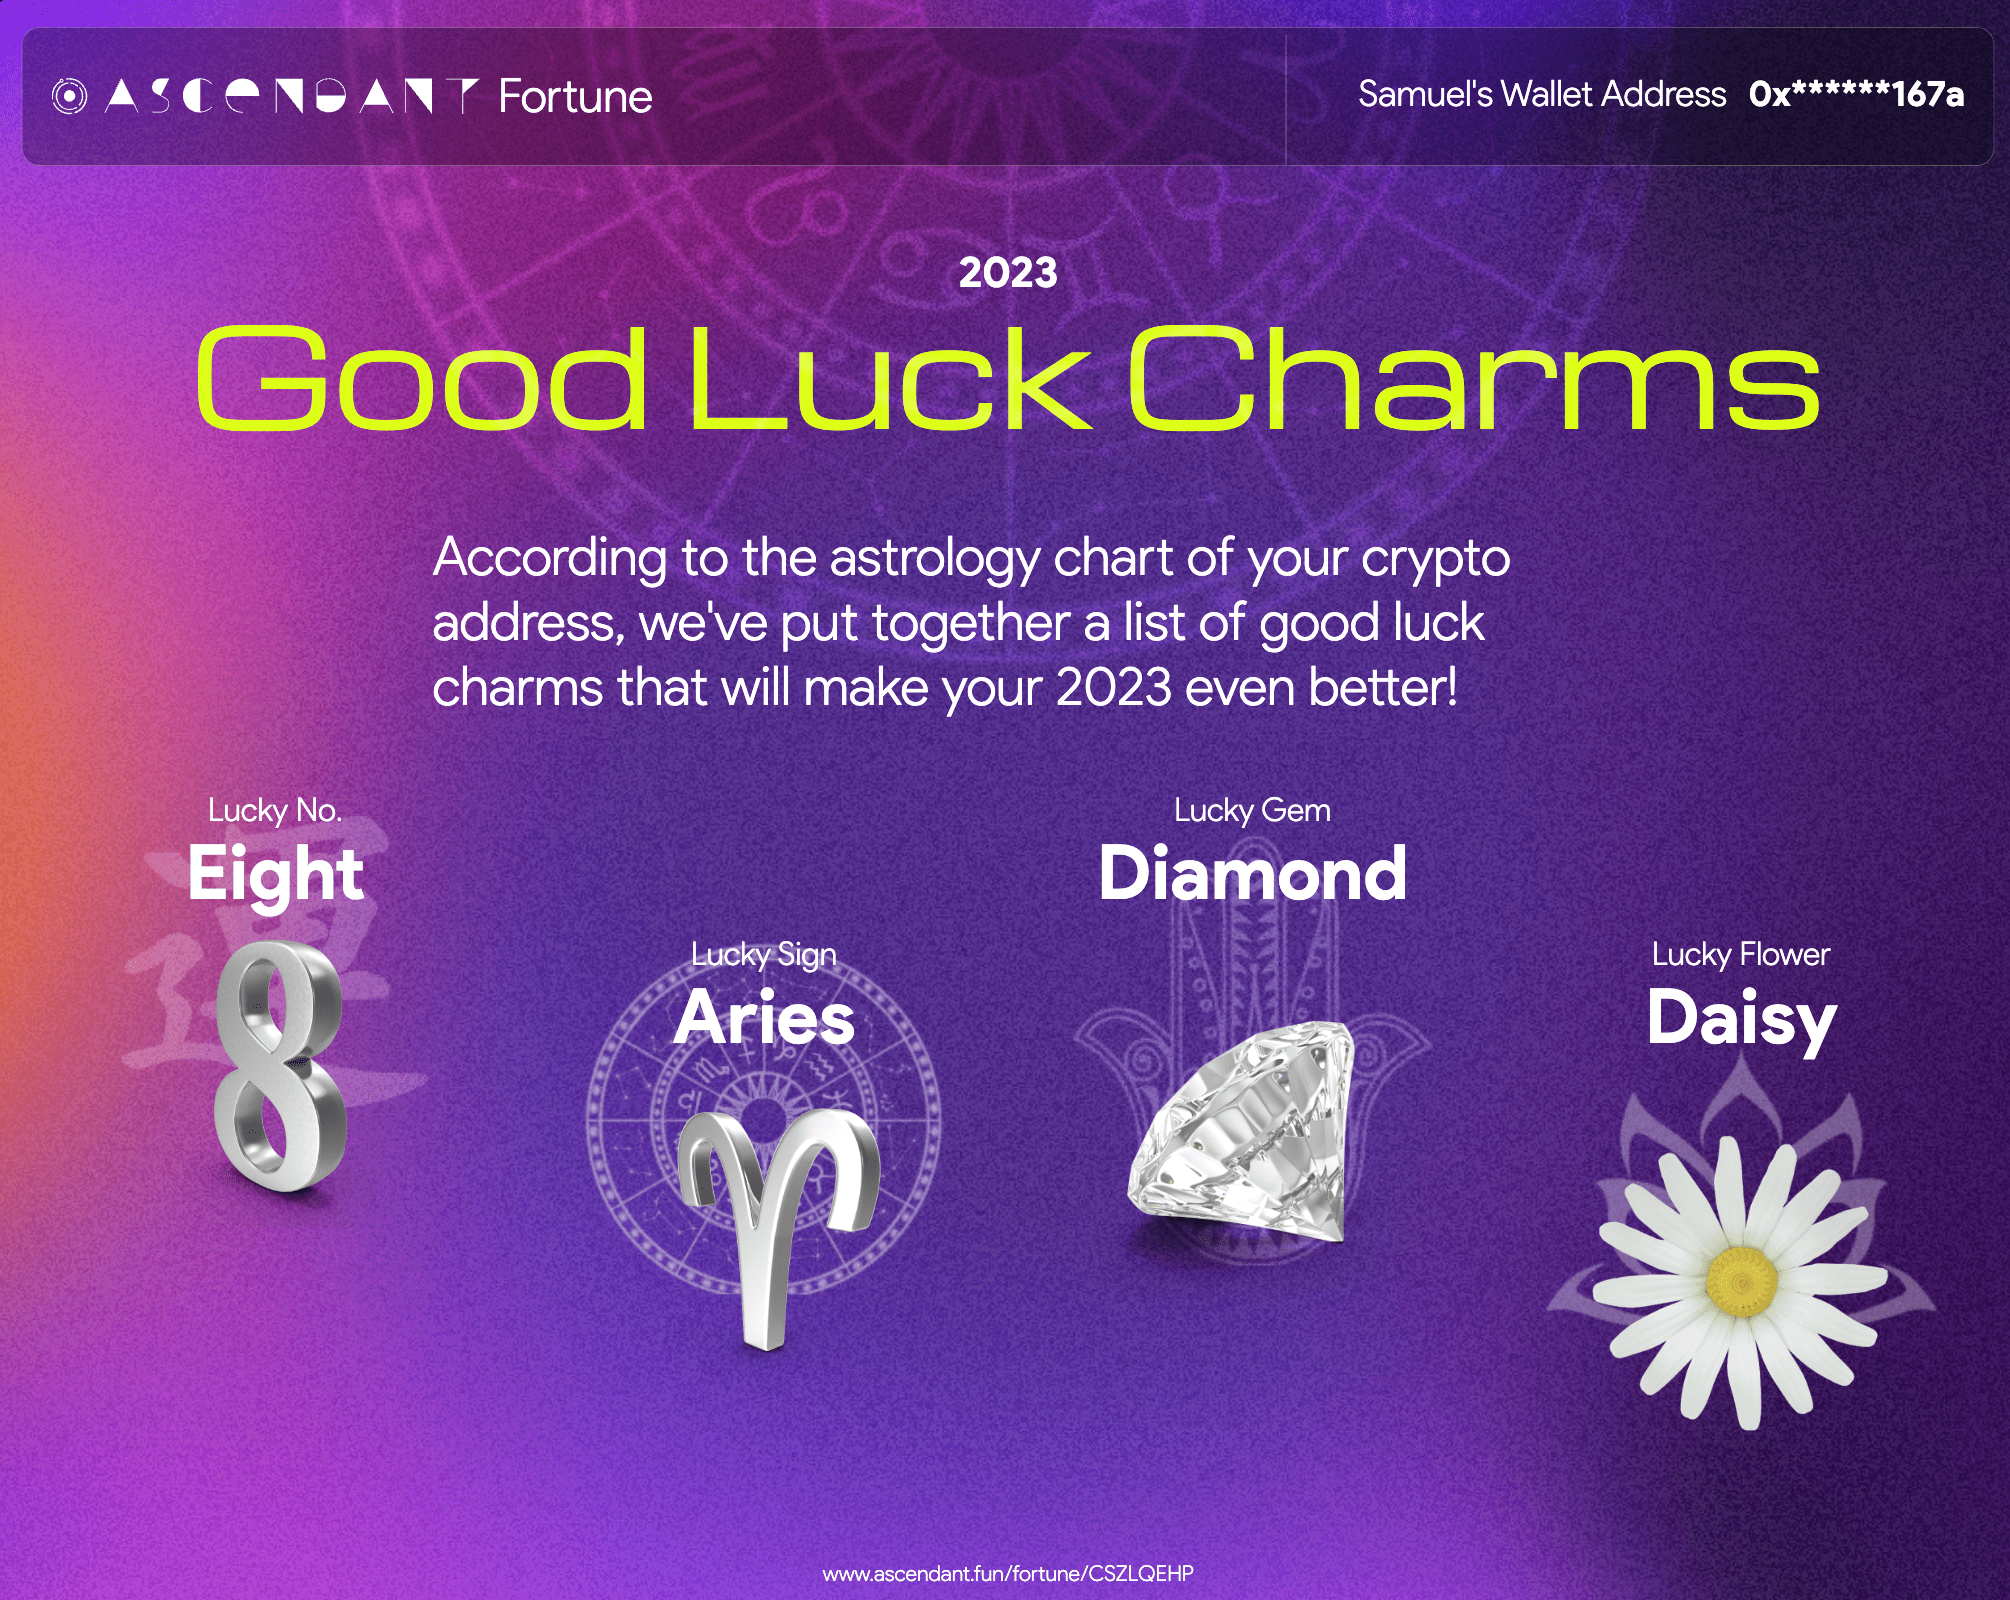 Ascendant demo image - good luck charms